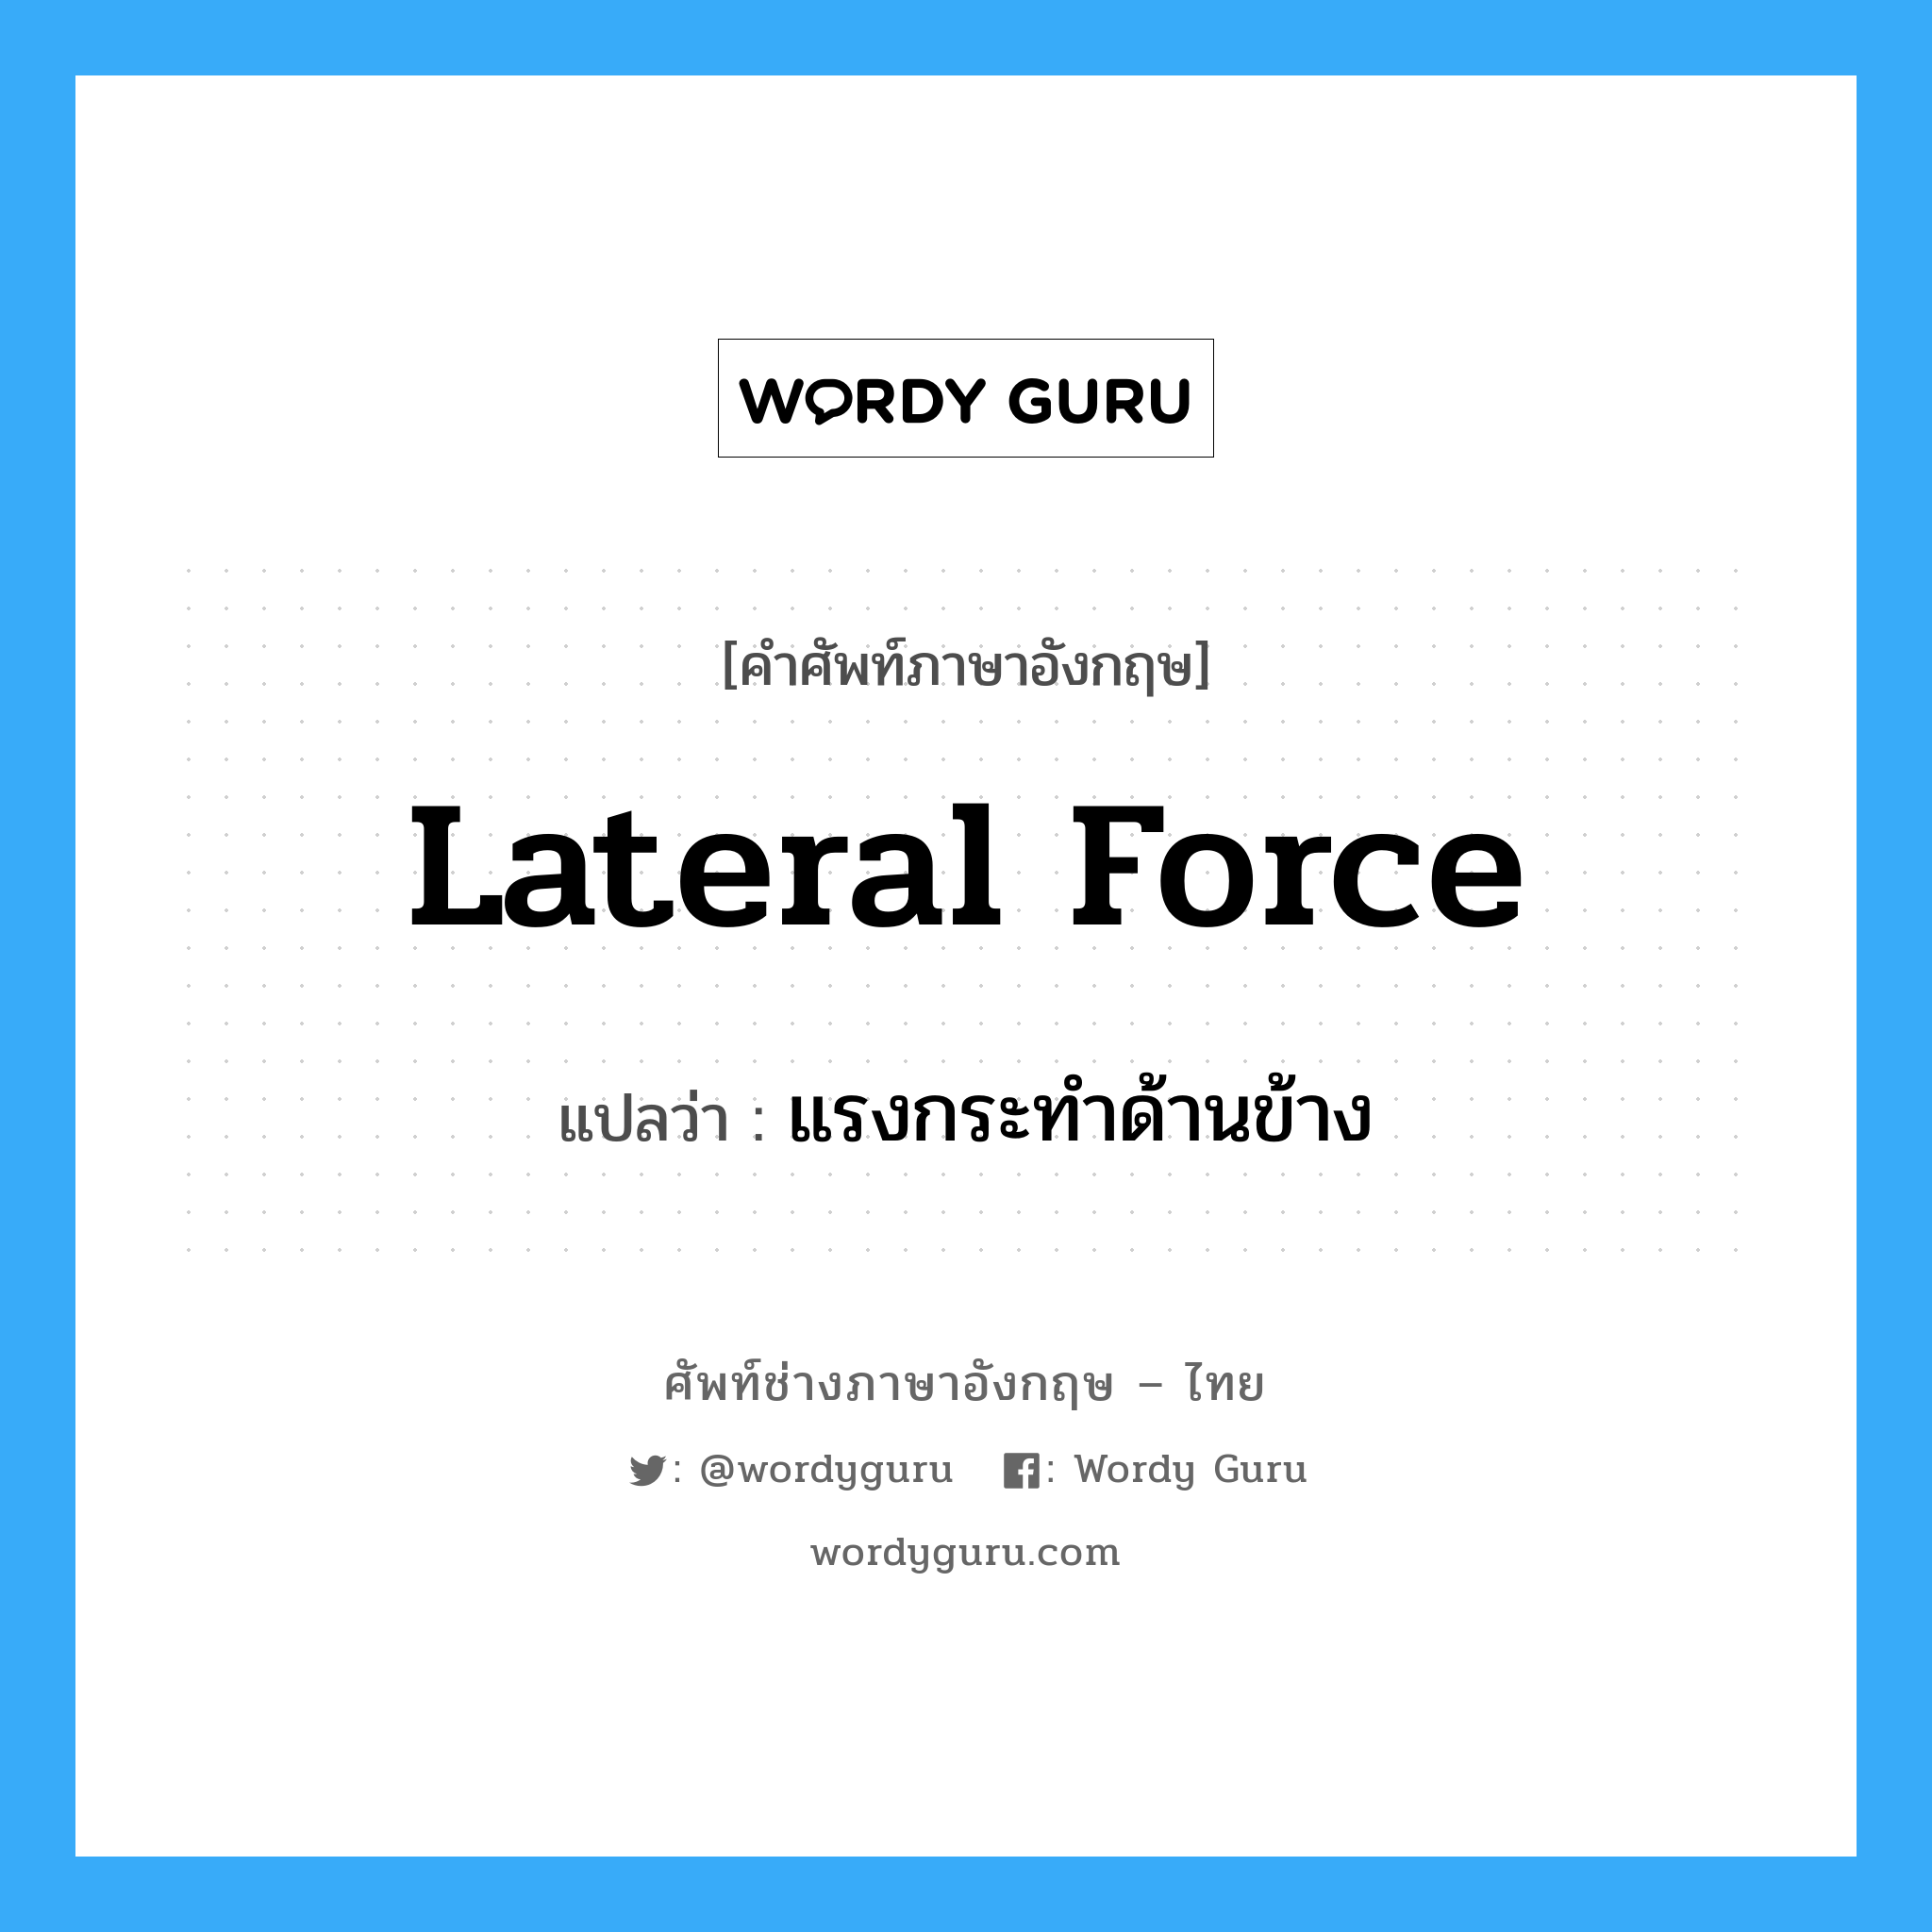 แรงกระทำด้านข้าง ภาษาอังกฤษ?, คำศัพท์ช่างภาษาอังกฤษ - ไทย แรงกระทำด้านข้าง คำศัพท์ภาษาอังกฤษ แรงกระทำด้านข้าง แปลว่า lateral force